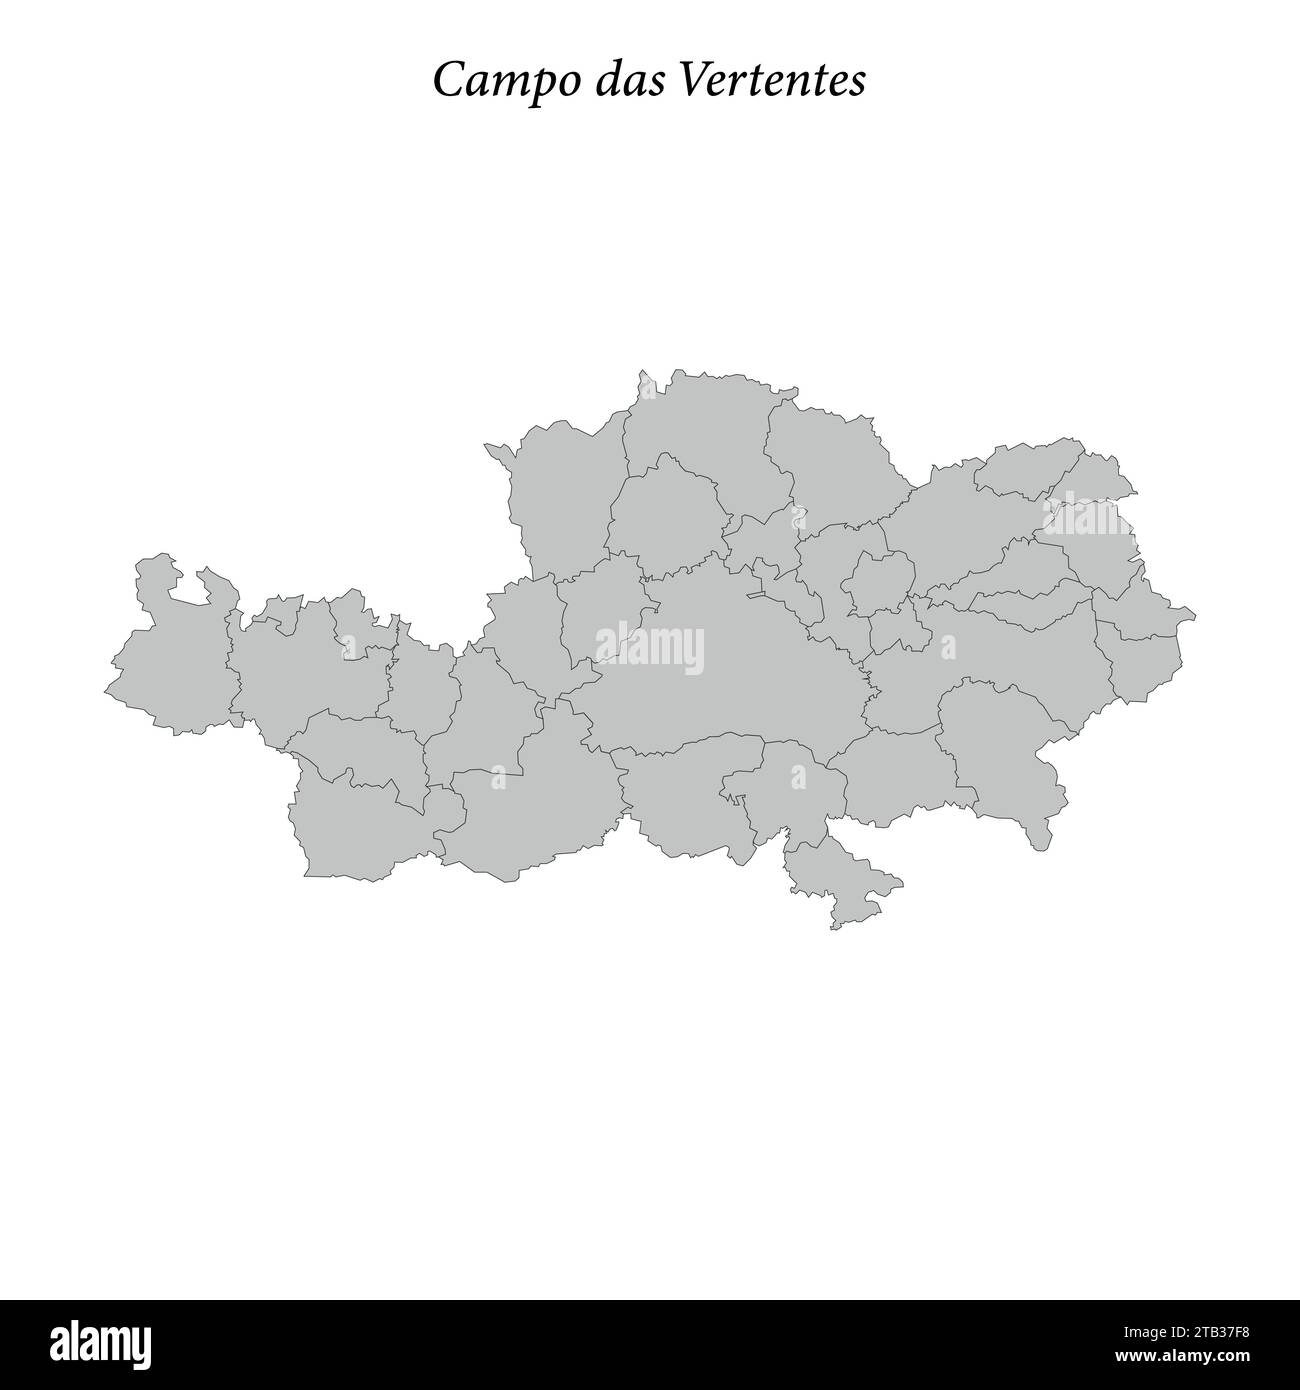 la mappa di campo das Vertentes è un mesoregion situato nello stato del Minas Gerais, con i comuni confinanti Illustrazione Vettoriale